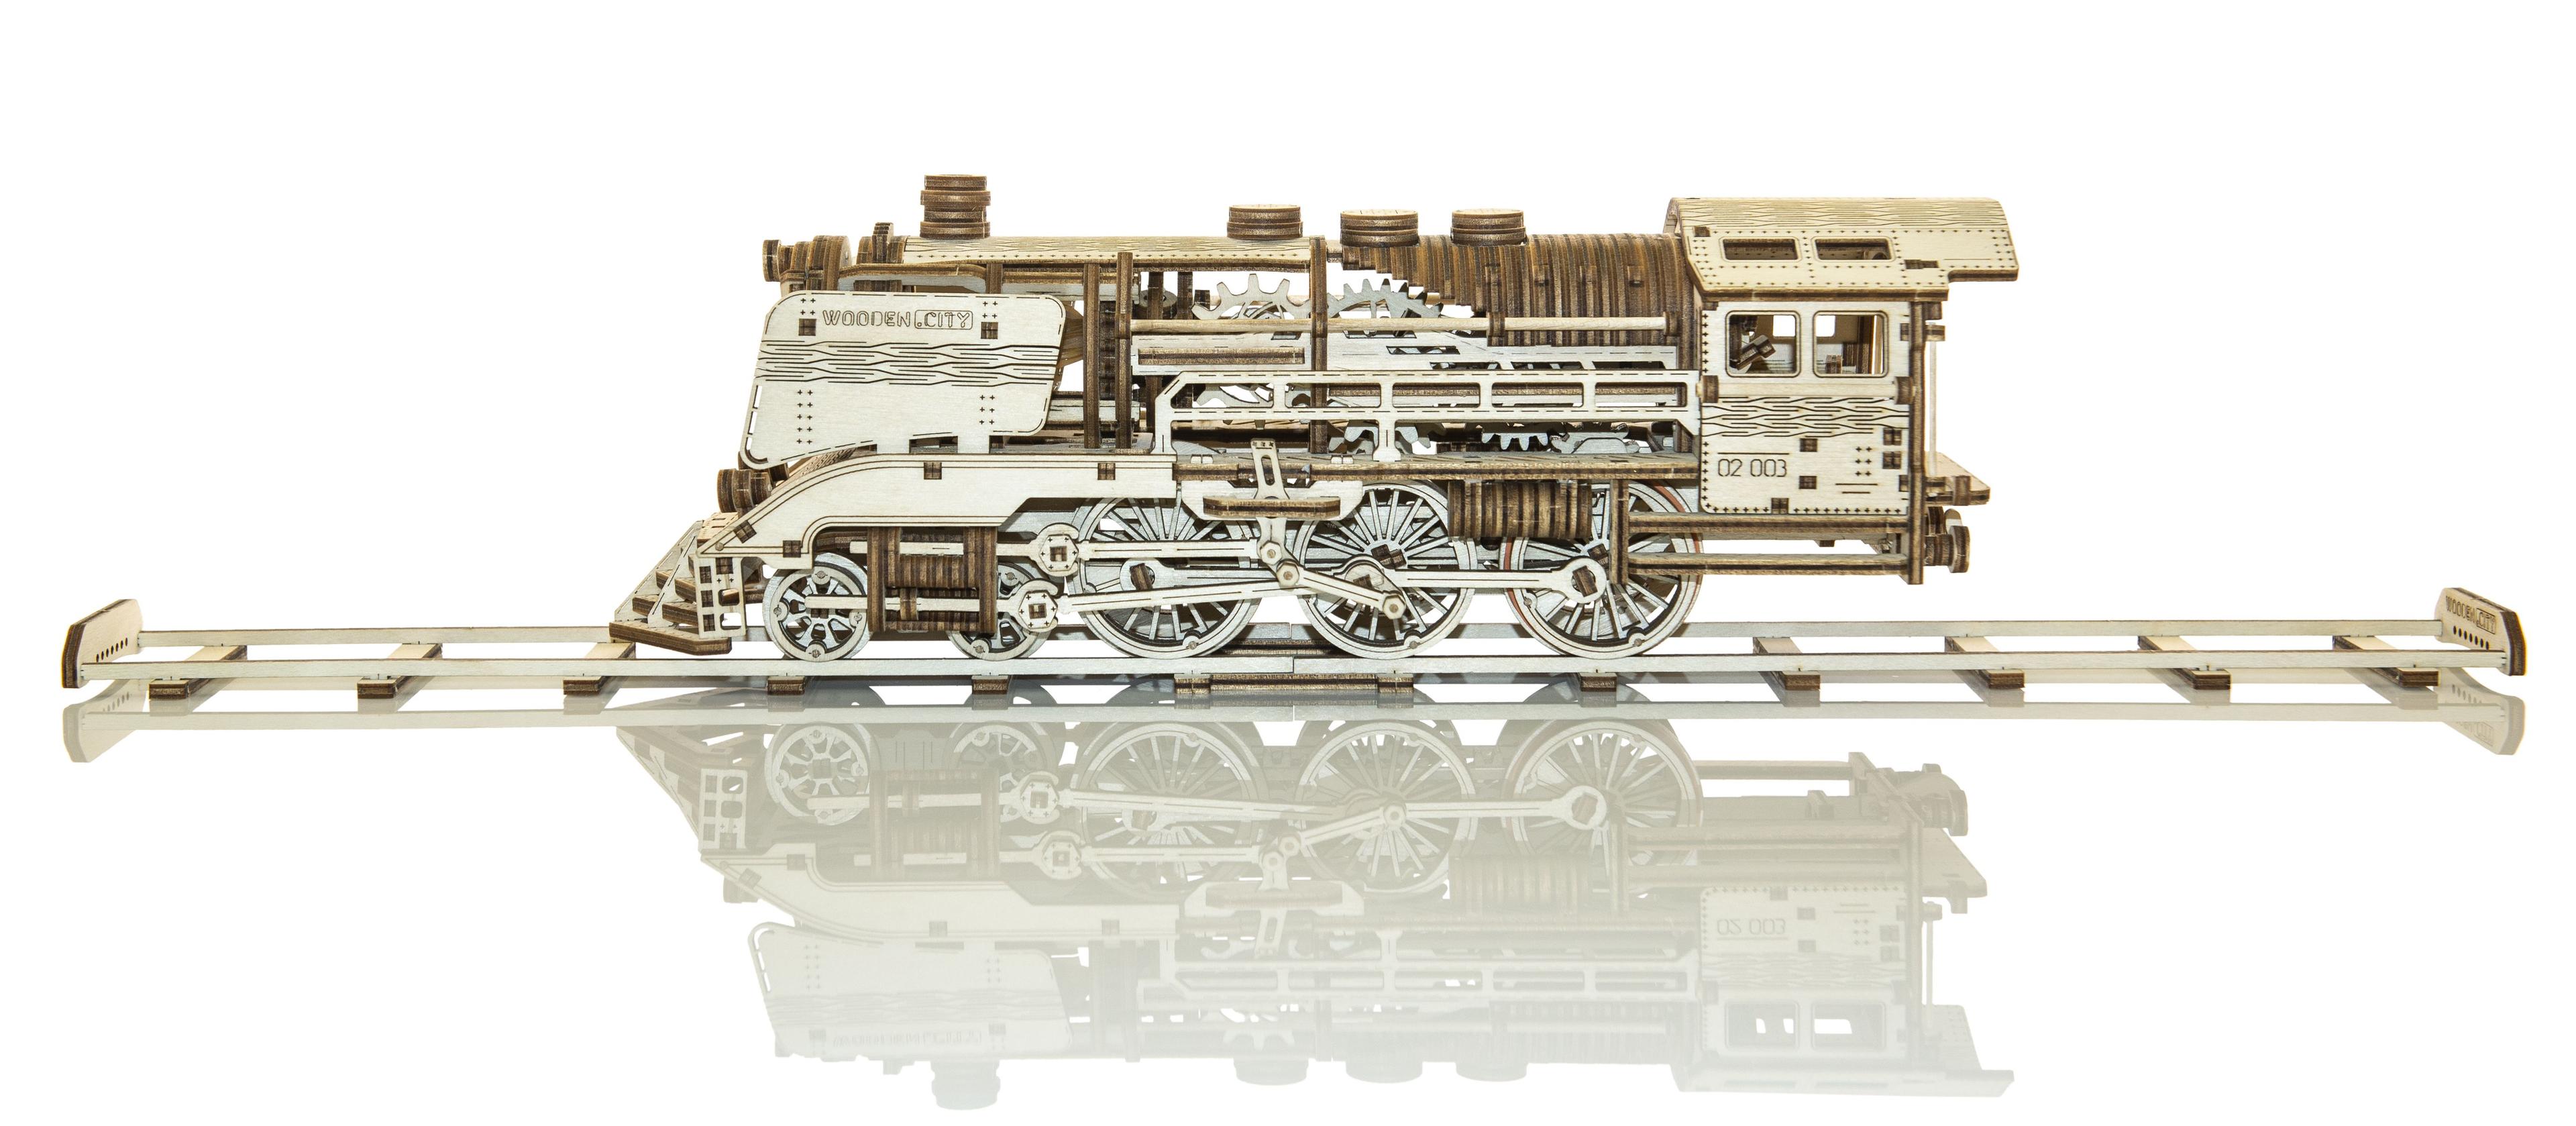 Drewniane Puzzle 3D – Pociąg Woden Express z szynami